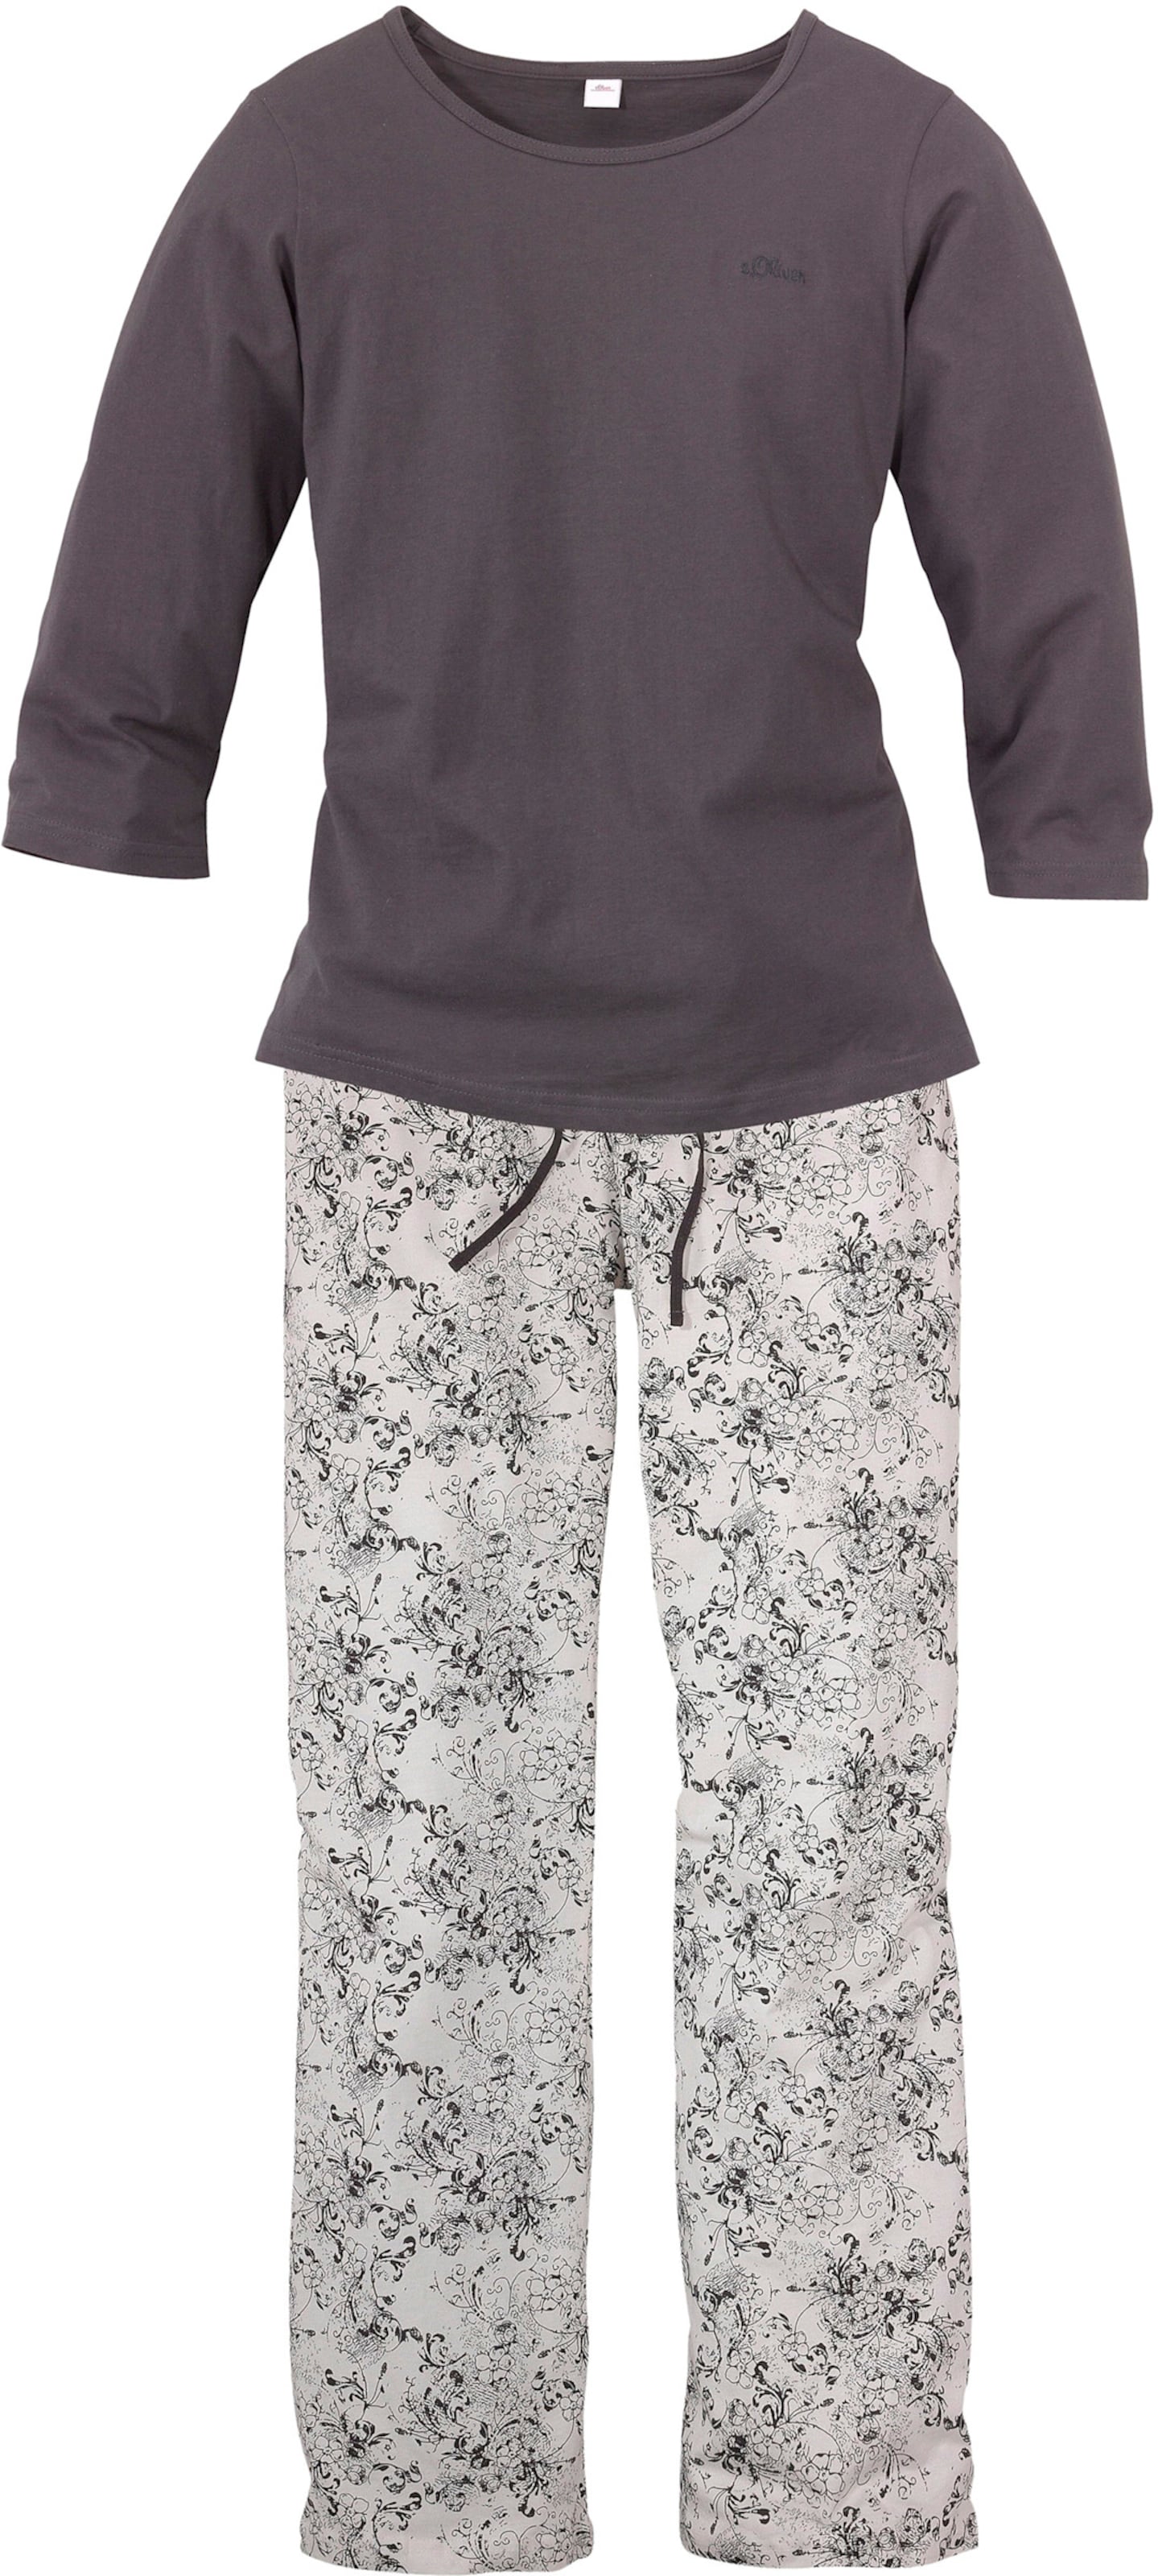 Pyjama in anthrazit, weiss-geblümt von s.Oliver